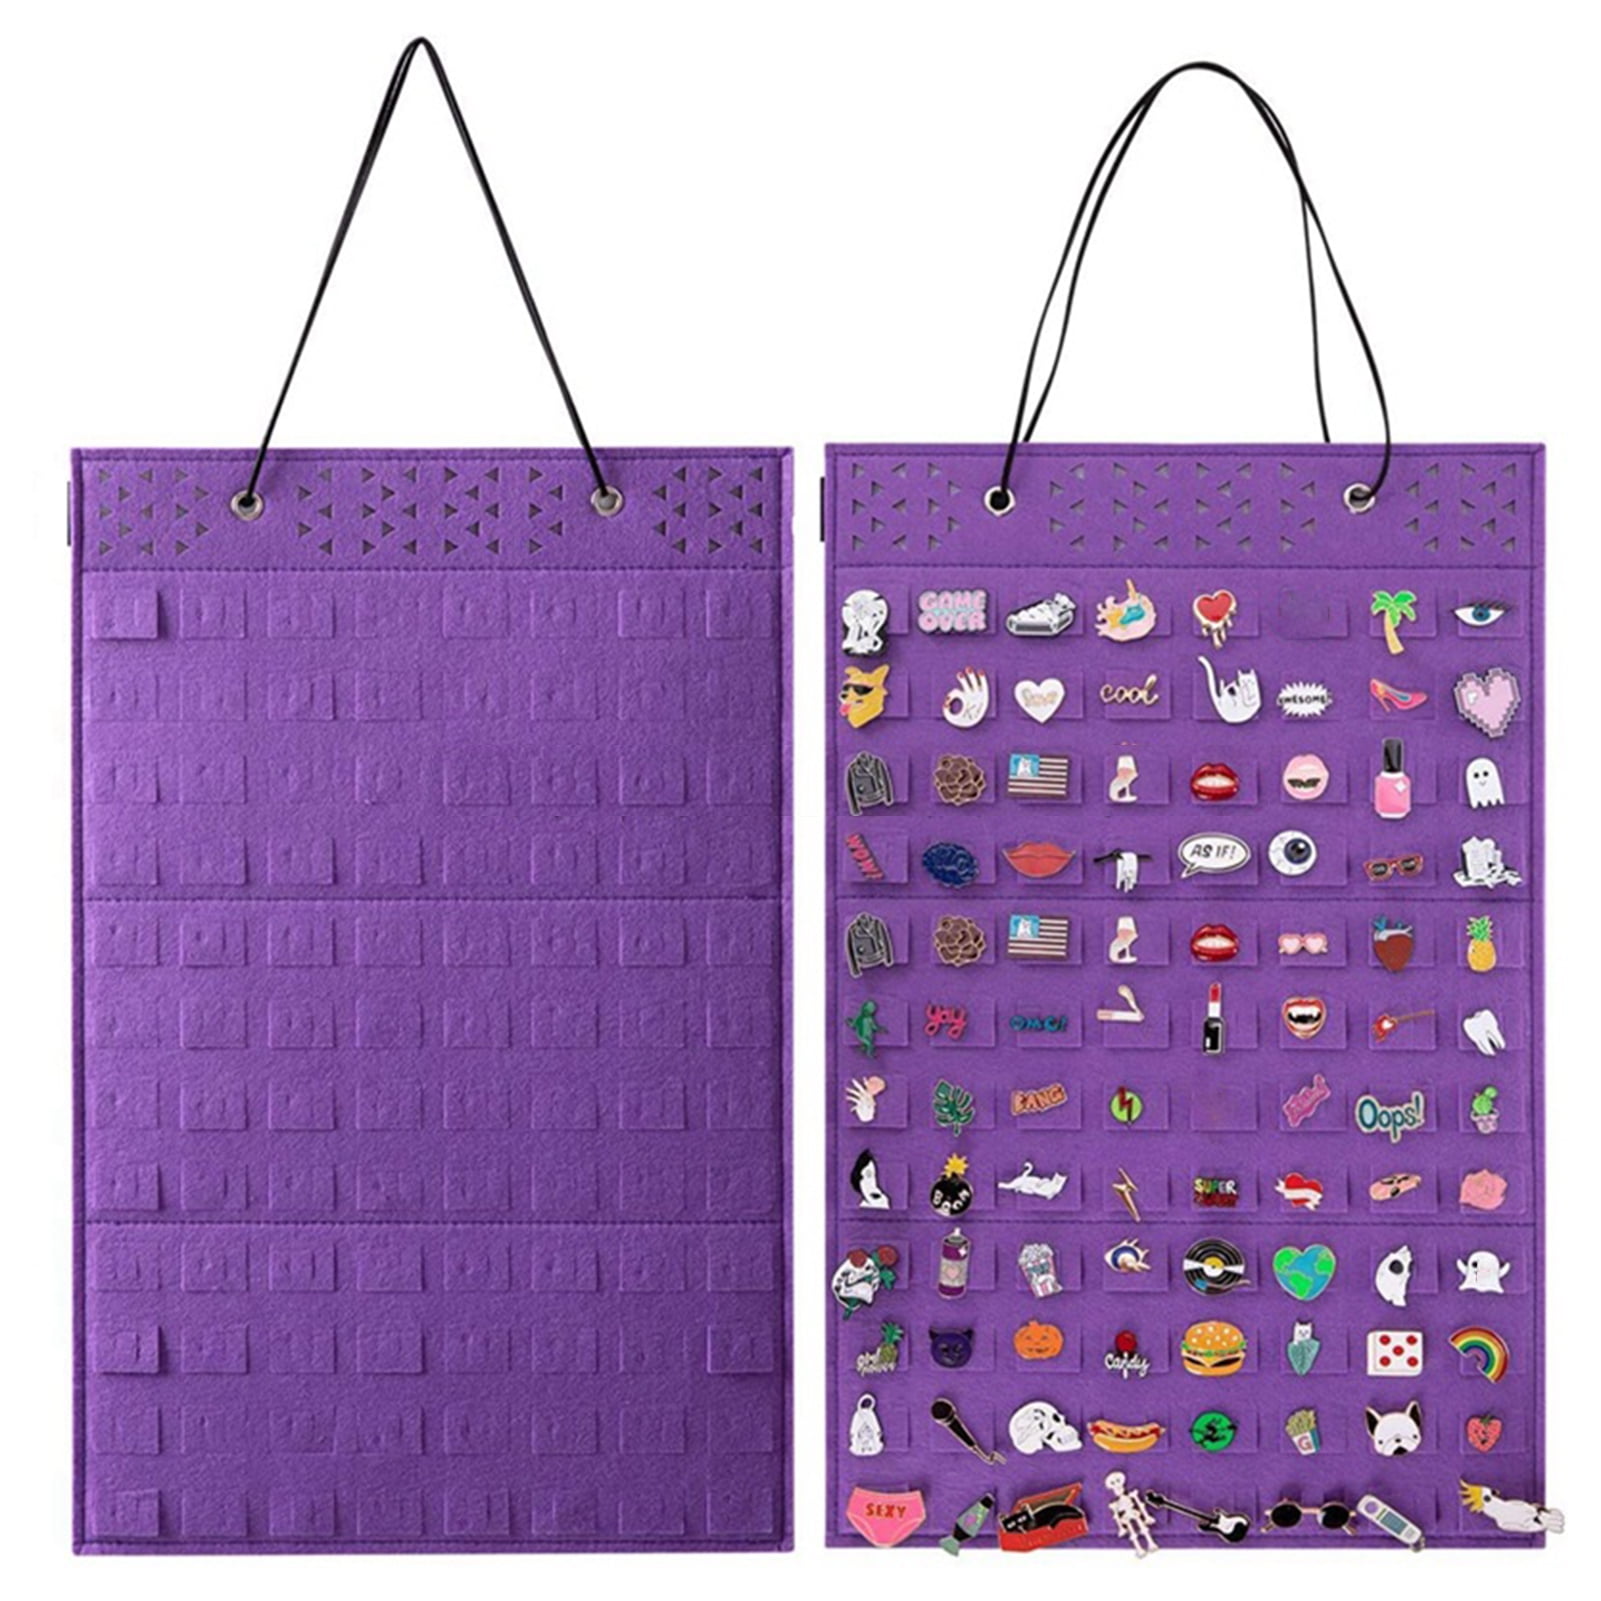 Pin on Shopping/storage bag